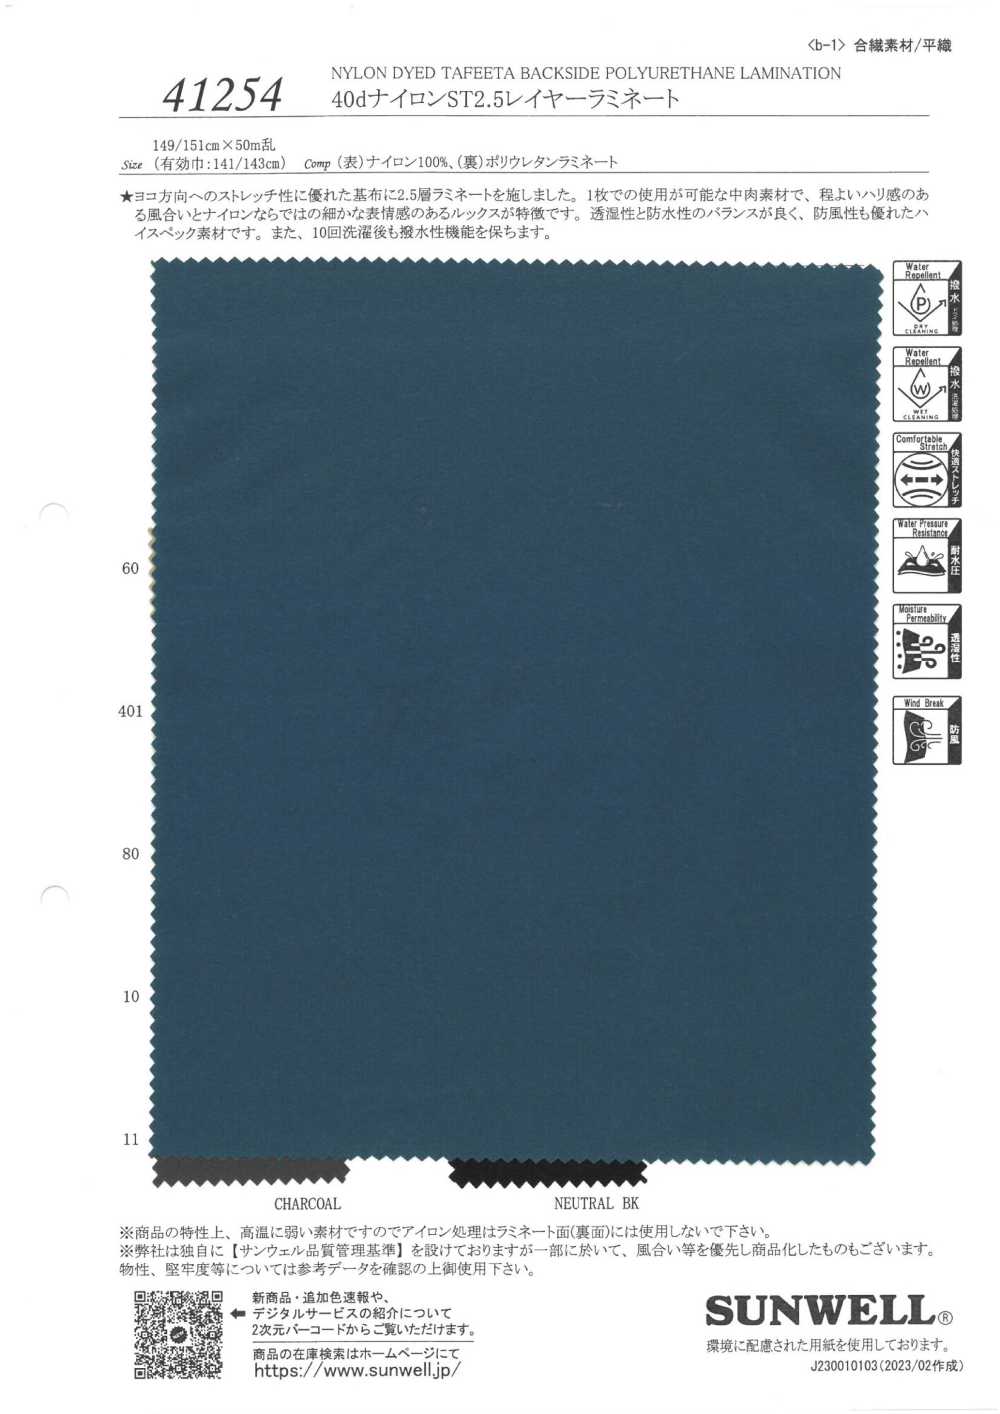 41254 40d Nylon ST2.5-Lagenlaminat[Textilgewebe] SUNWELL